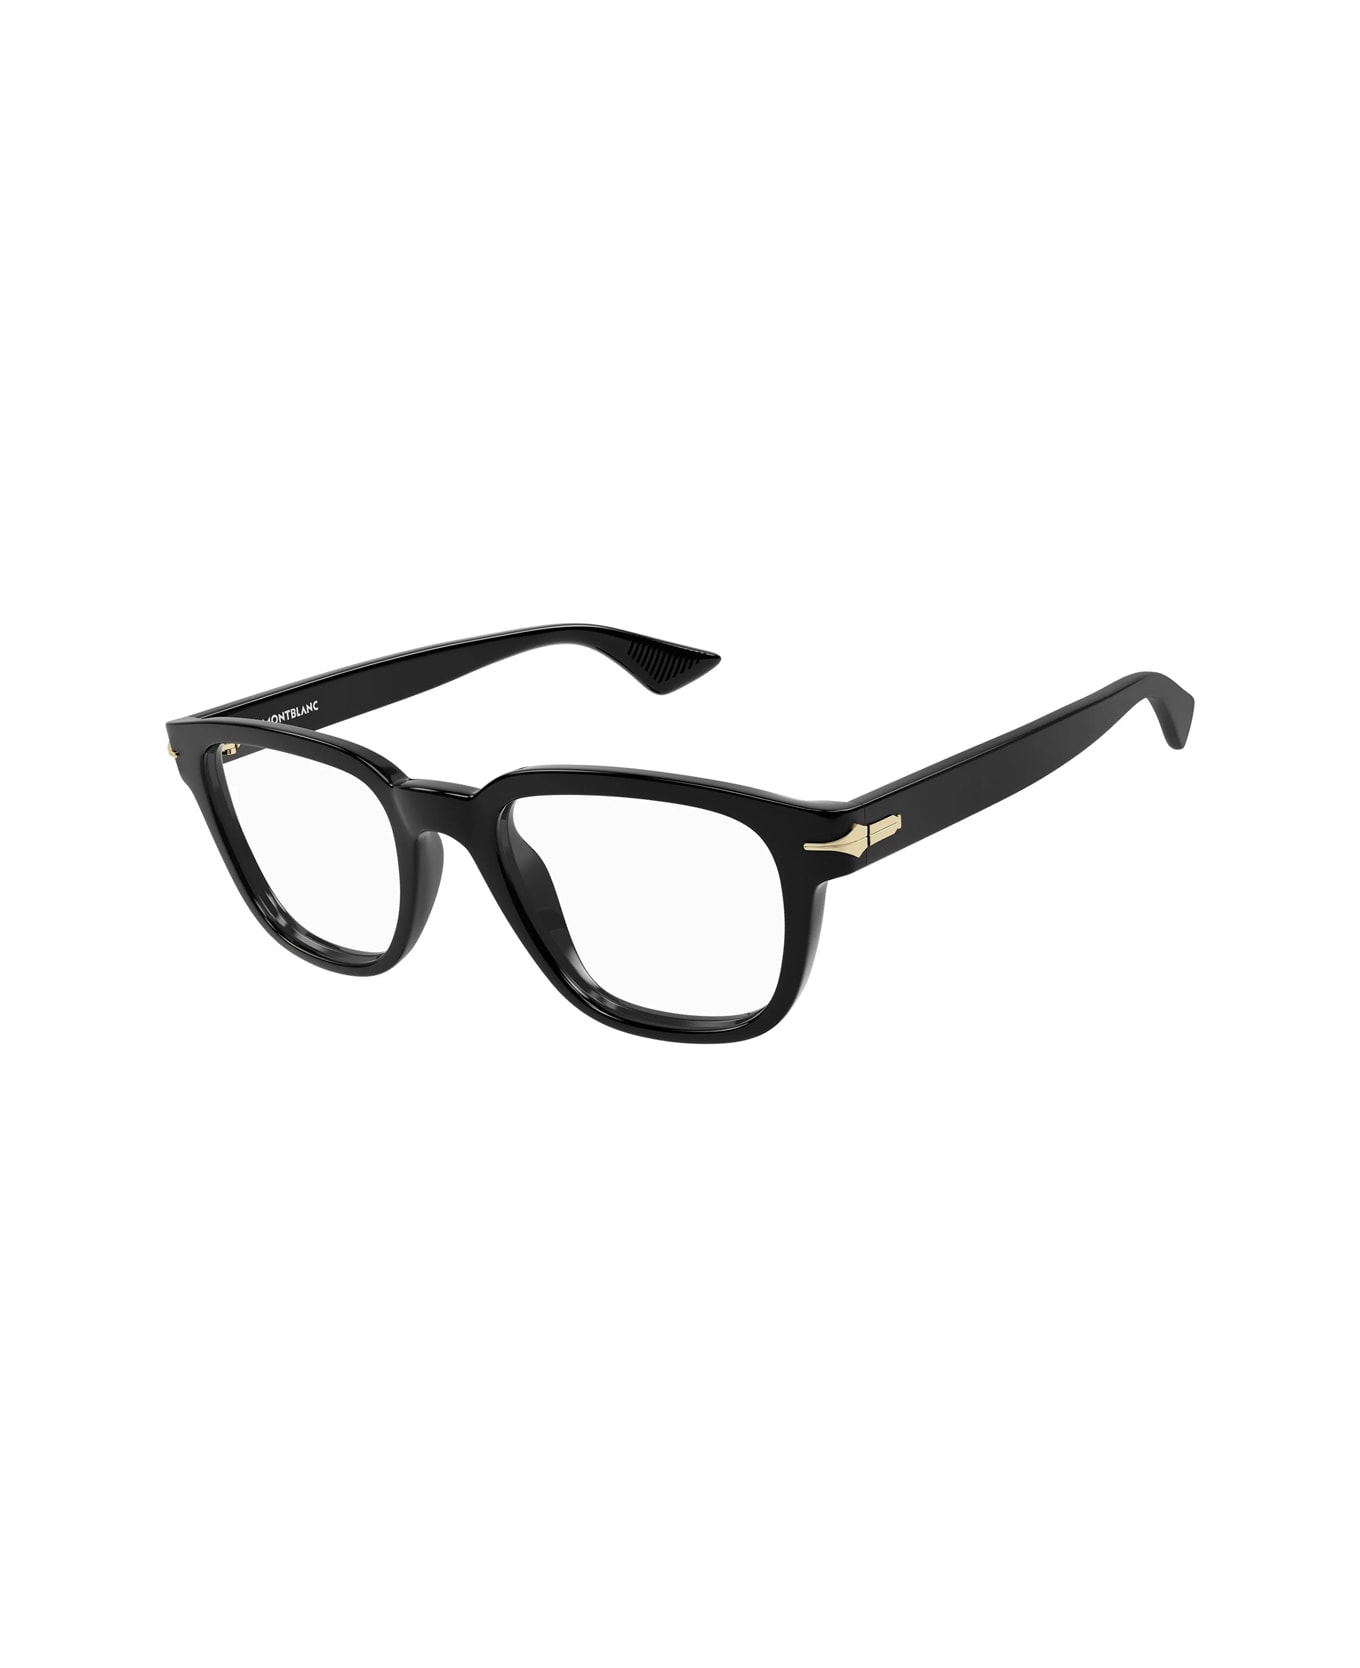 Montblanc Mb0305o 001 Glasses - Nero アイウェア